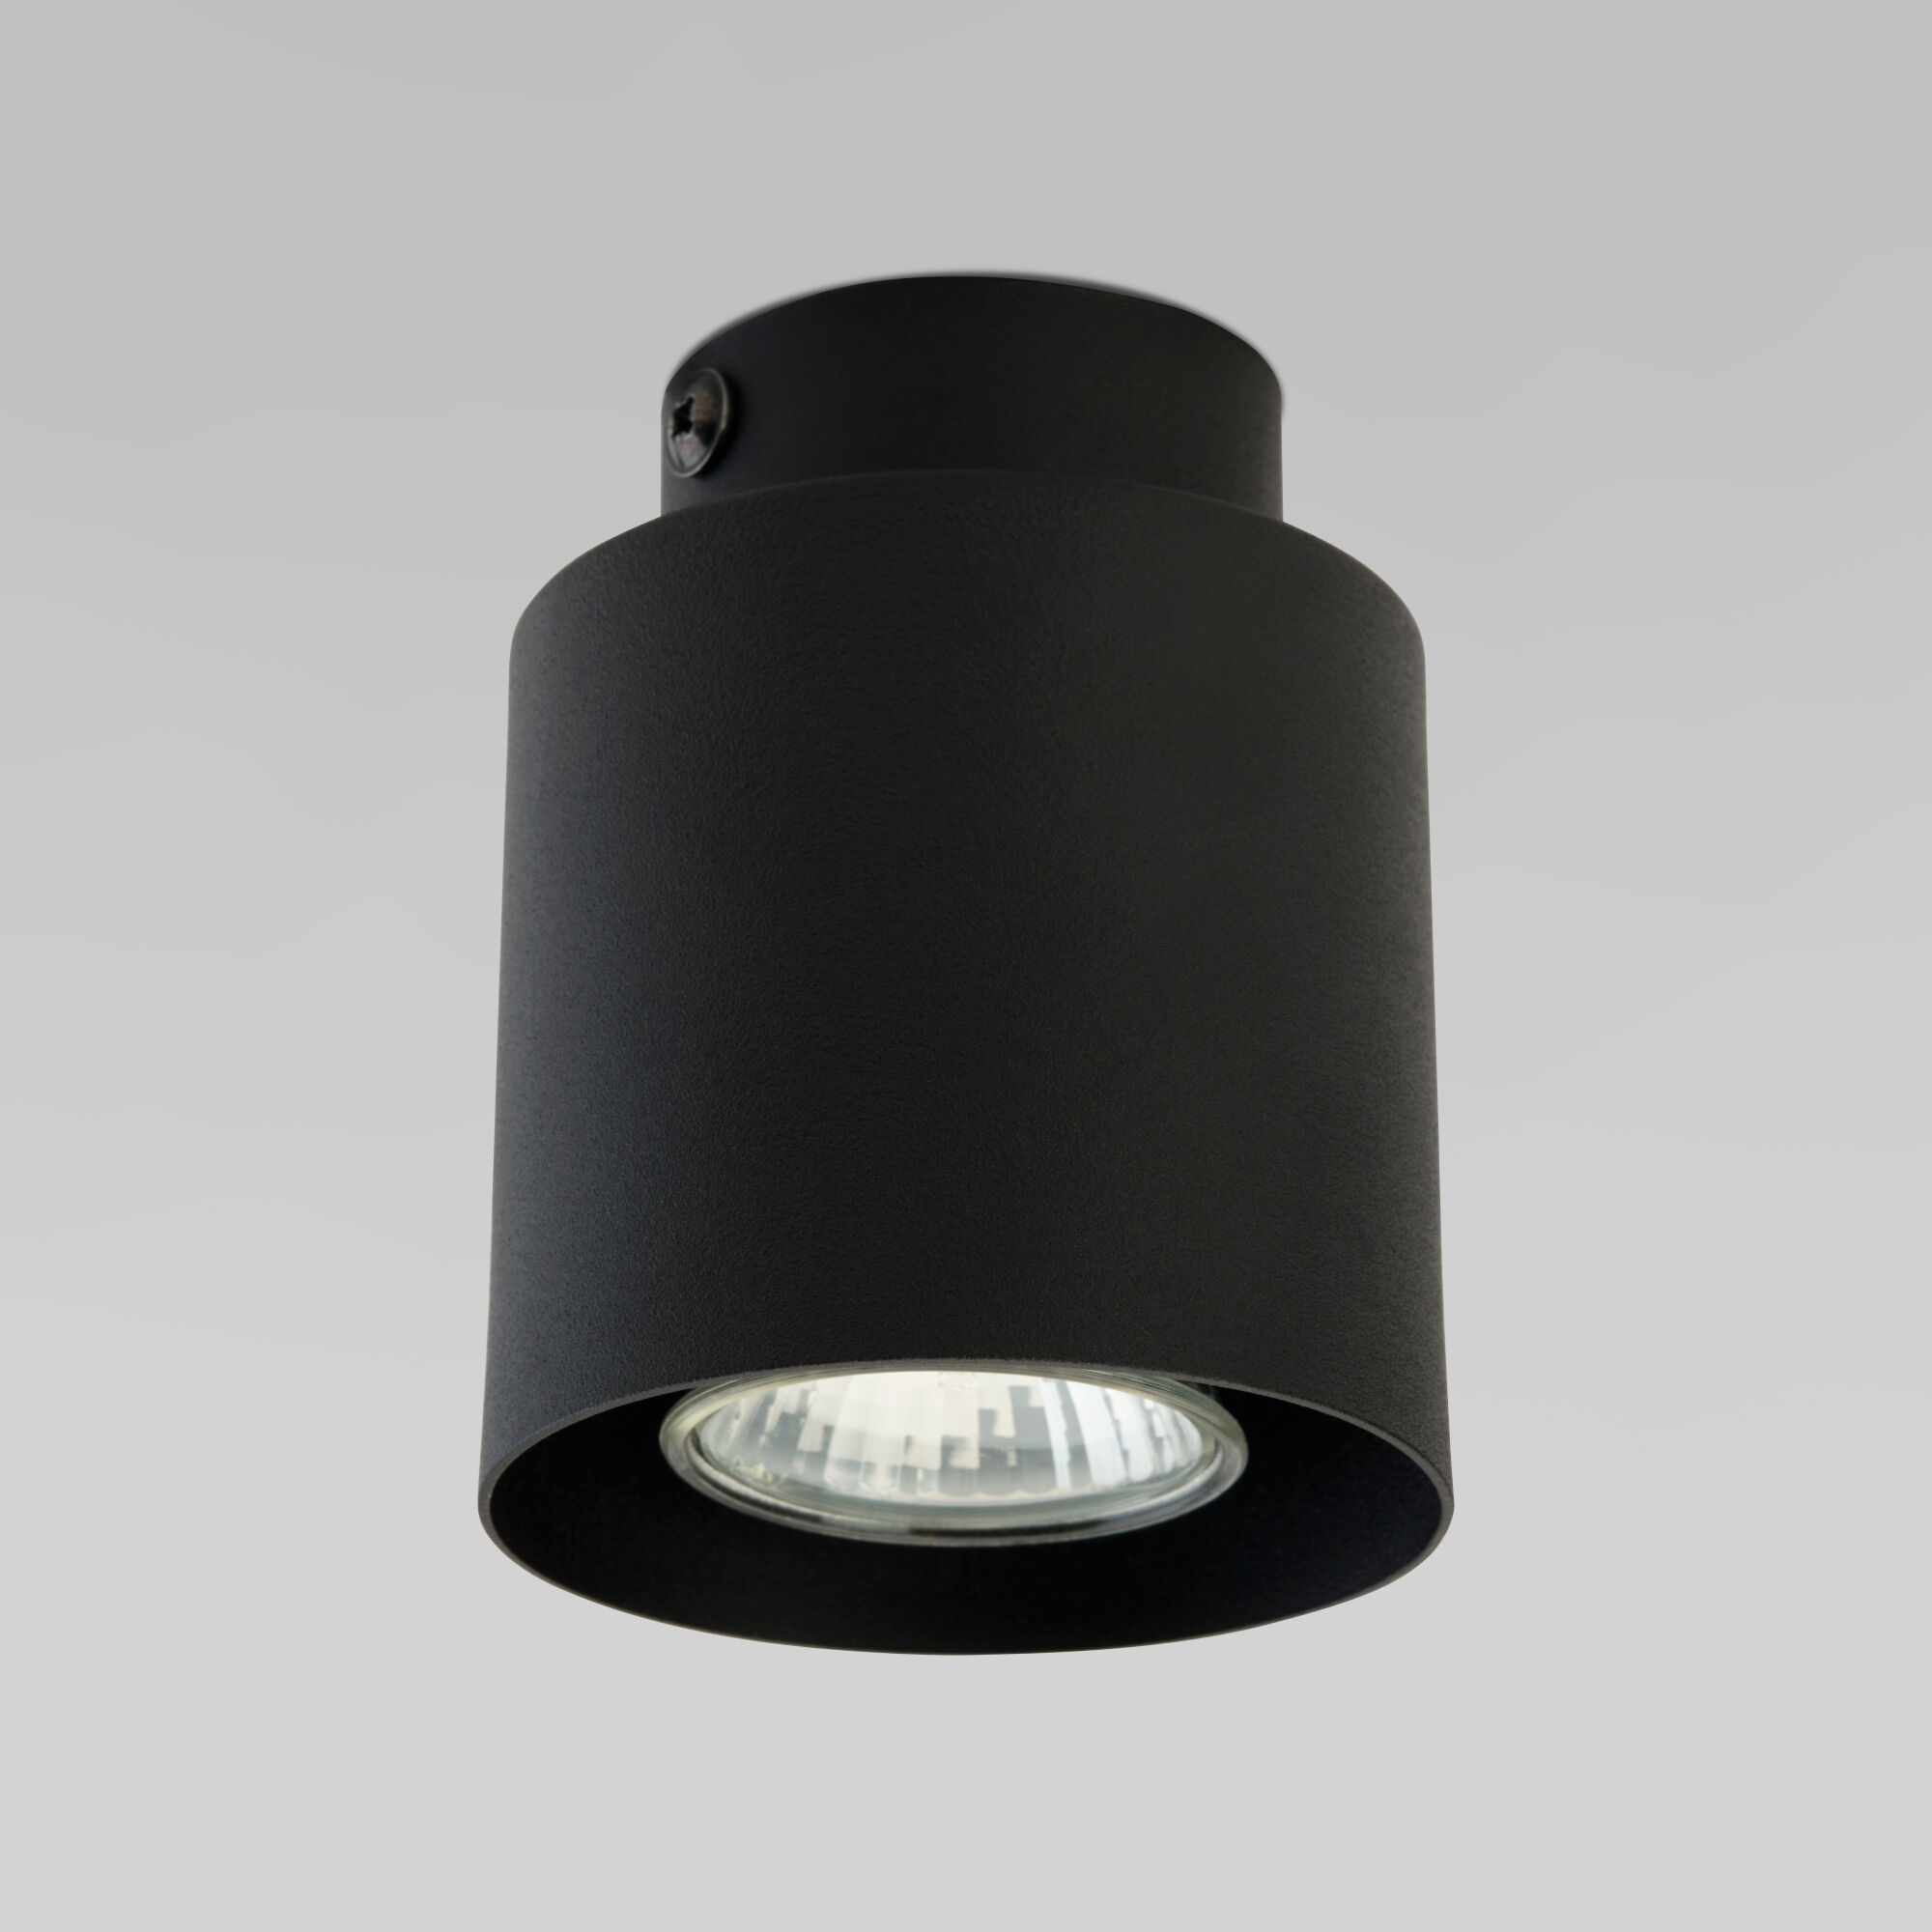 Потолочный светильник в стиле лофт TK Lighting Vico 3410 Vico Black. Фото 1